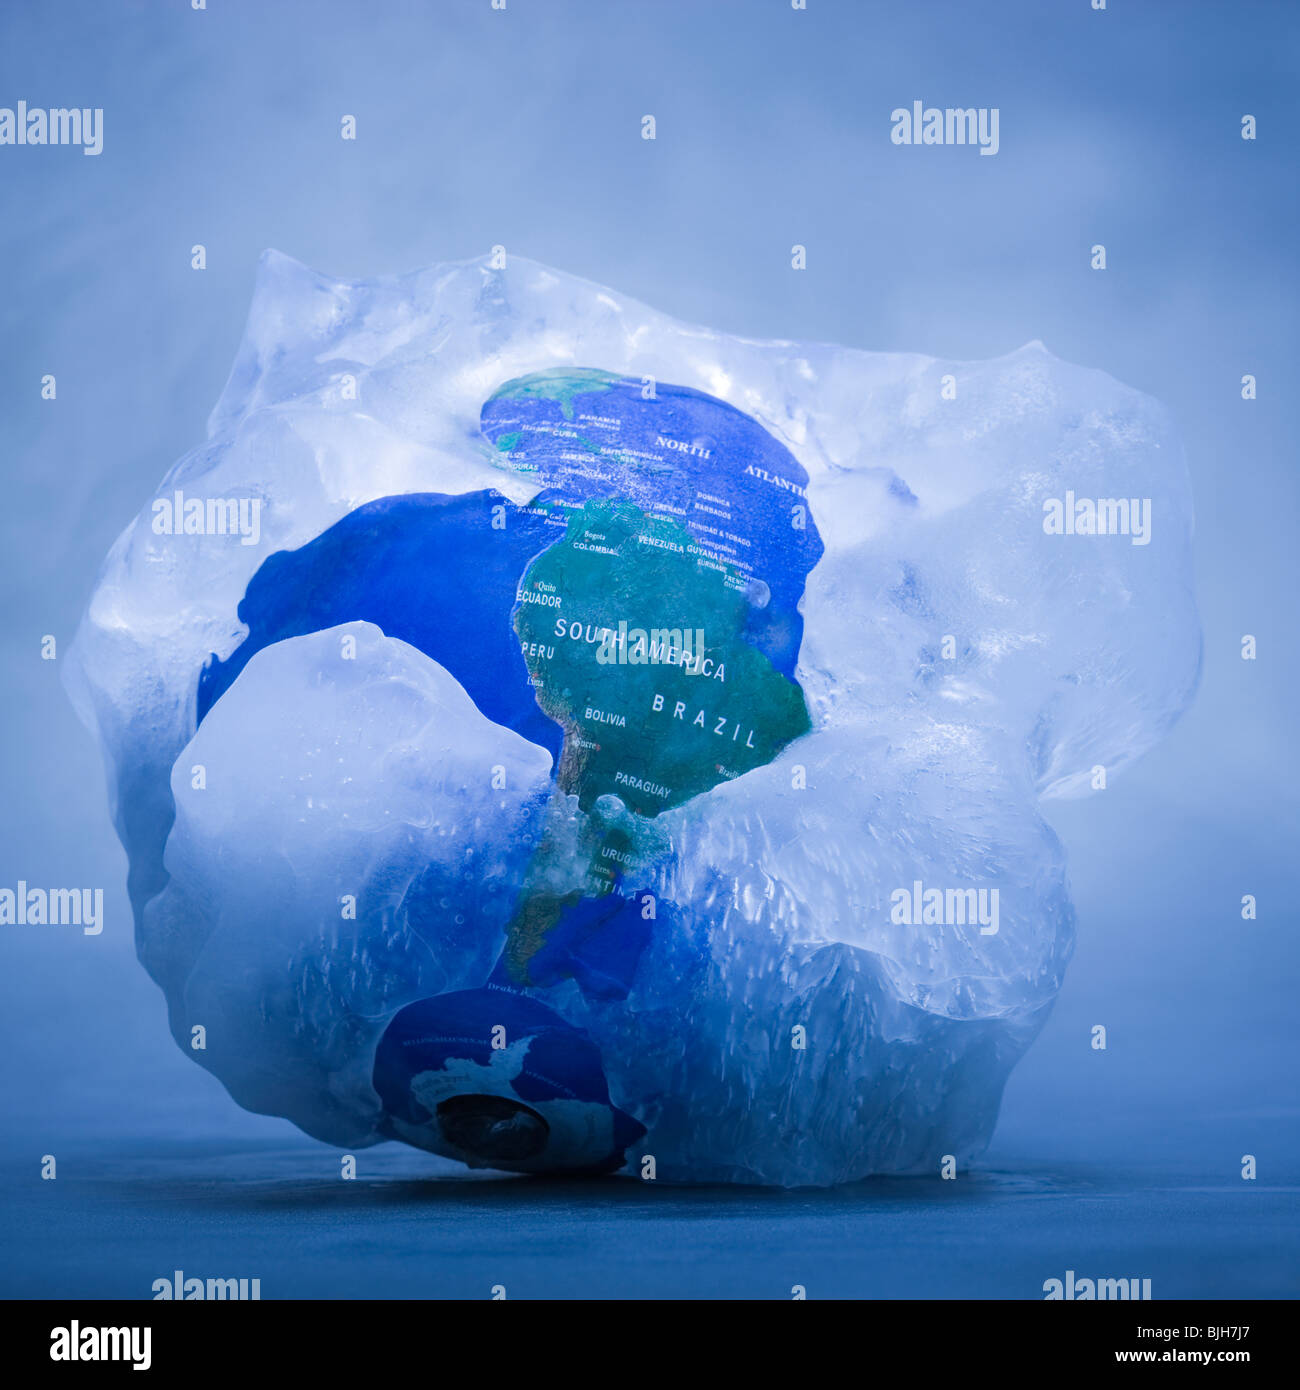 Globus mit Eis bedeckt Stockfoto